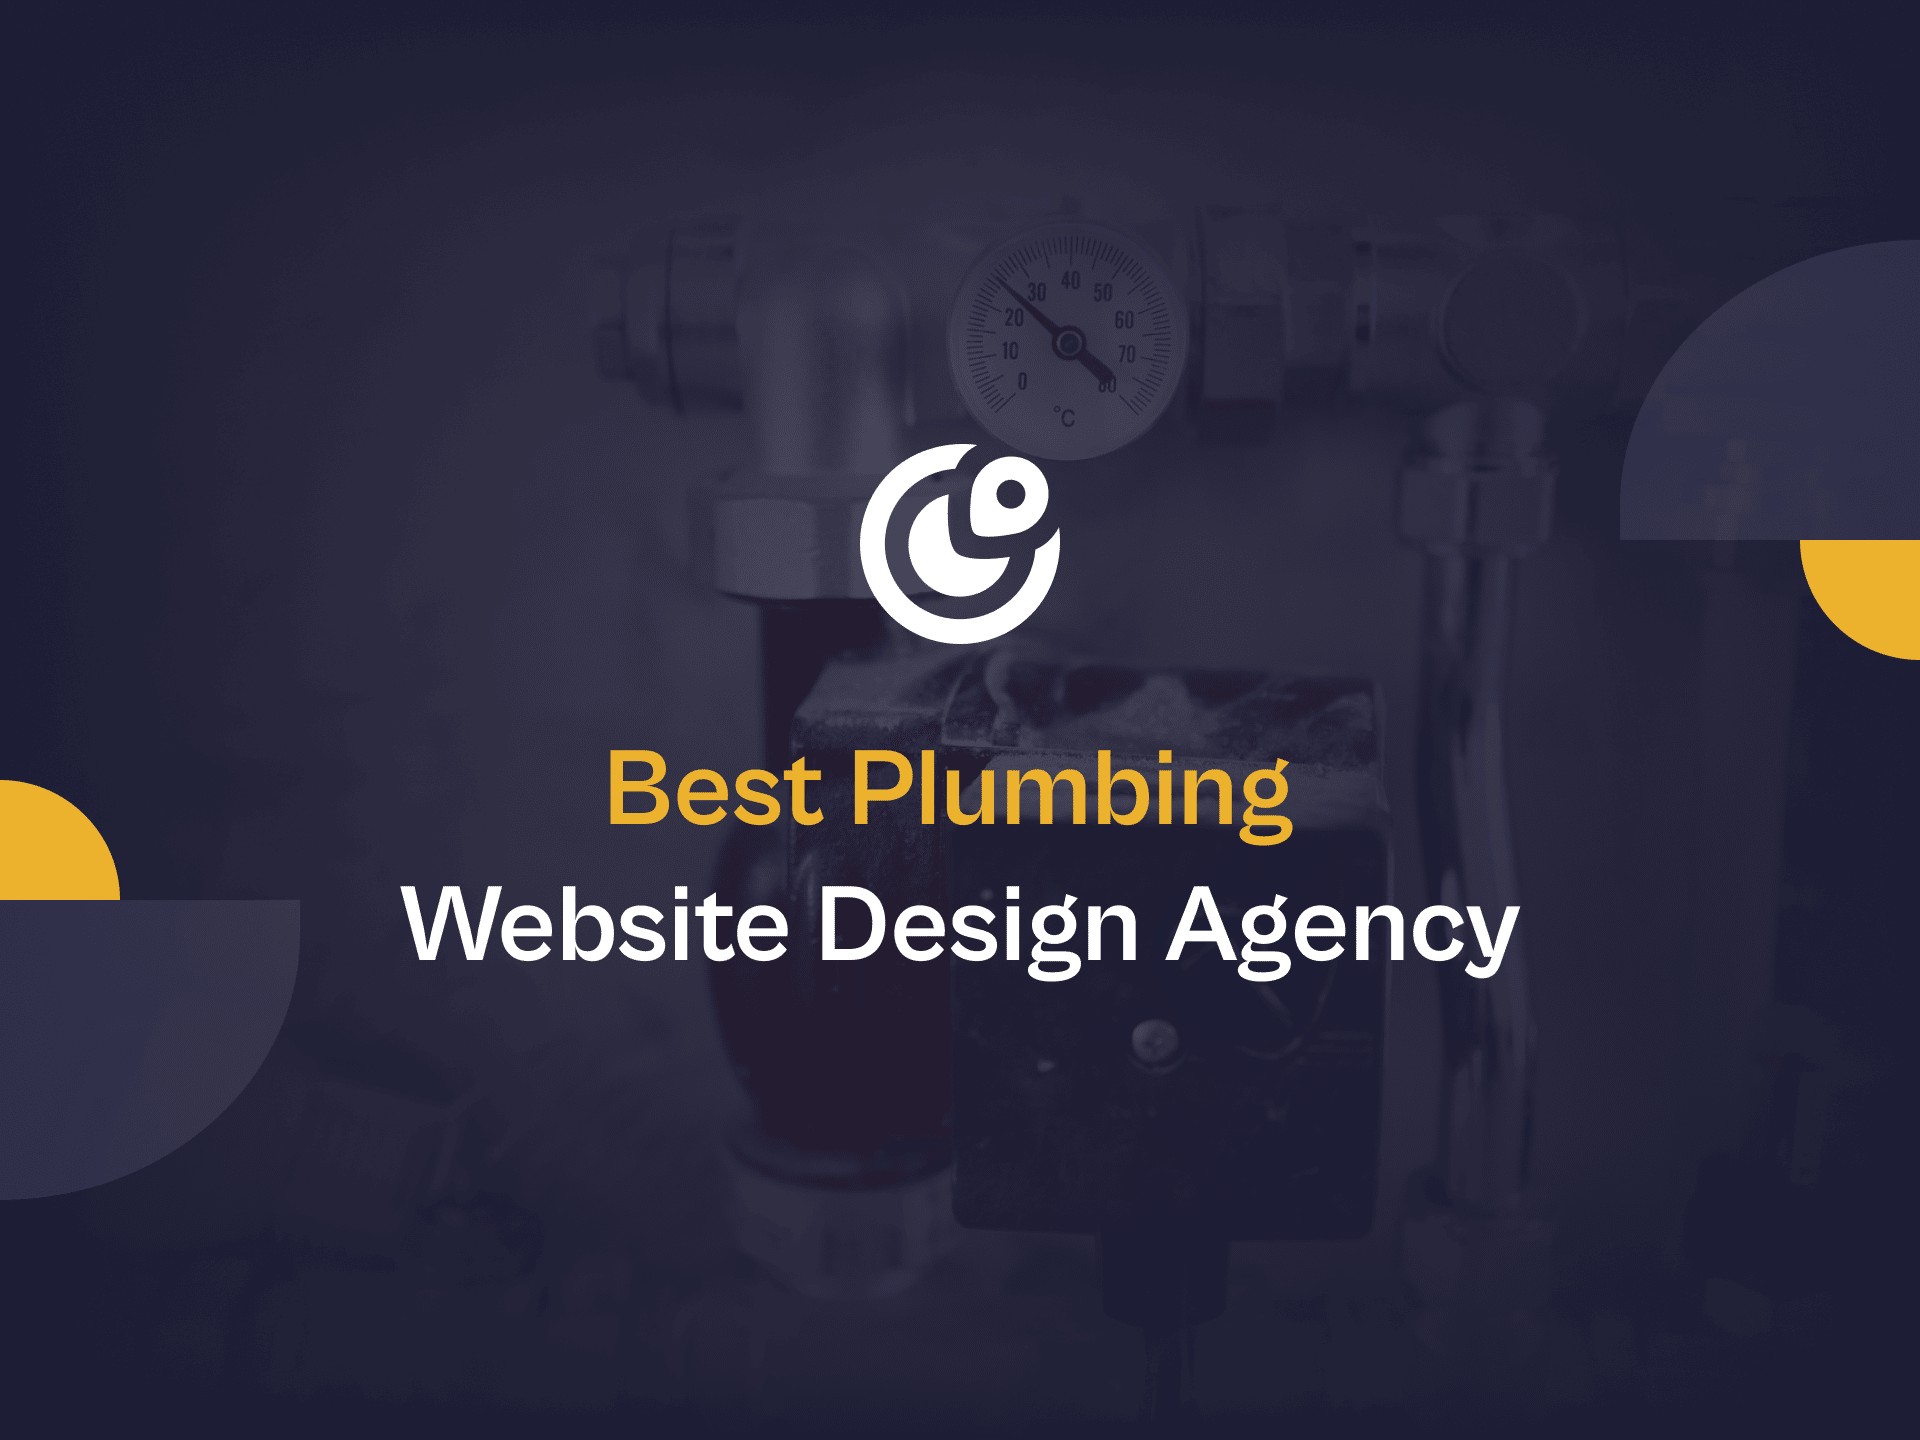 Best plumbing website design agency